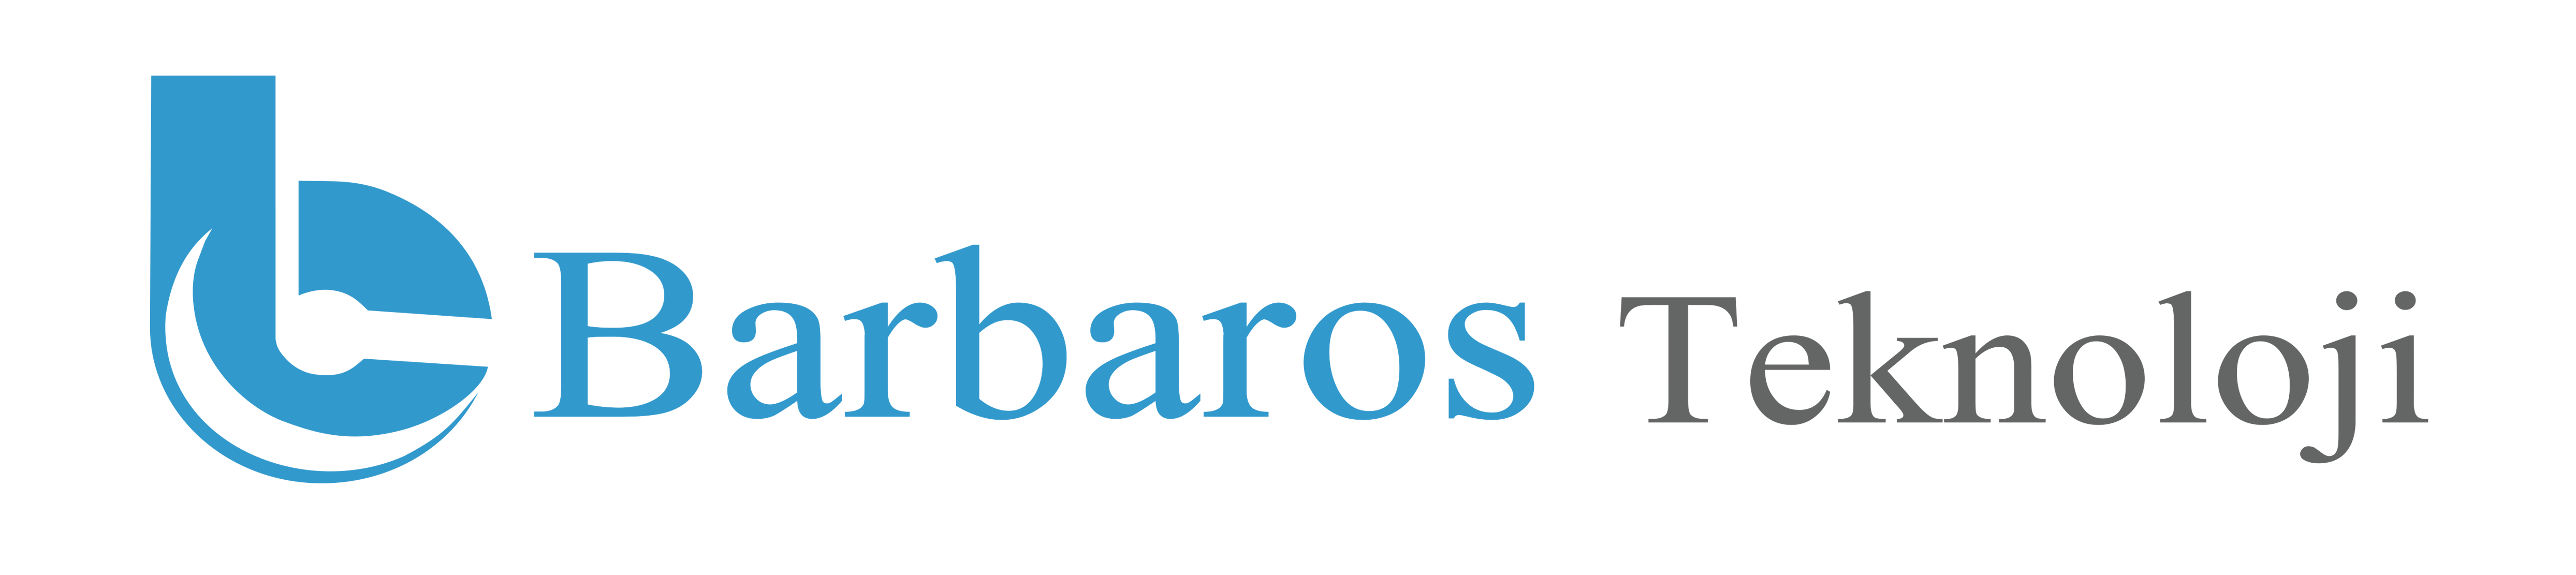 barbaros-teknoloji-logo